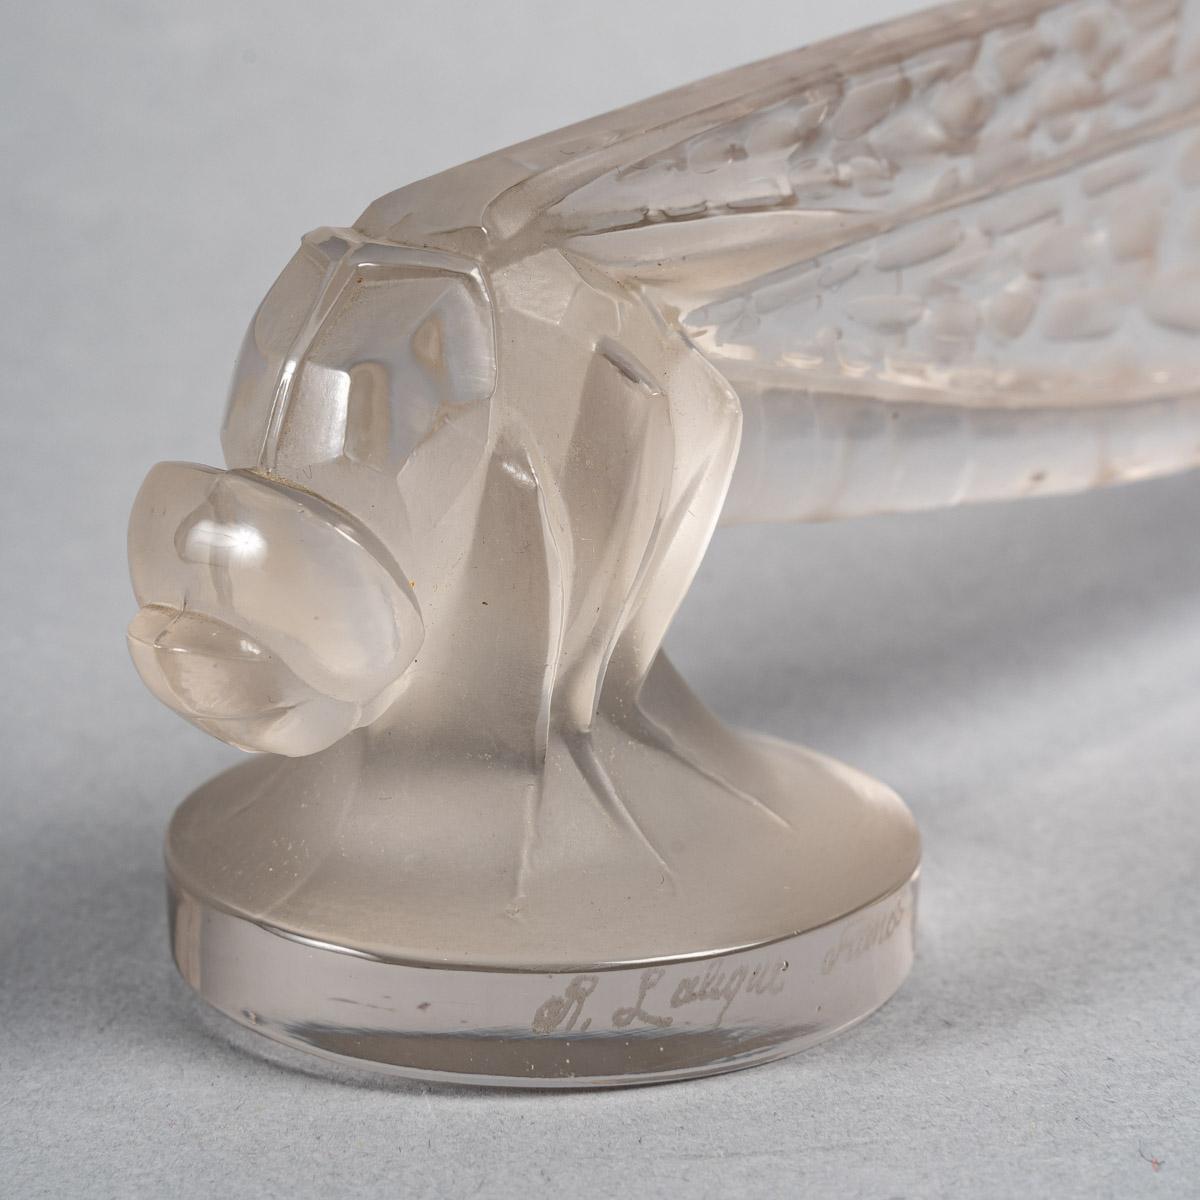 Art Deco 1928 René Lalique Petite Libellule Car Mascot Hood Ornament Glass Dragonfly